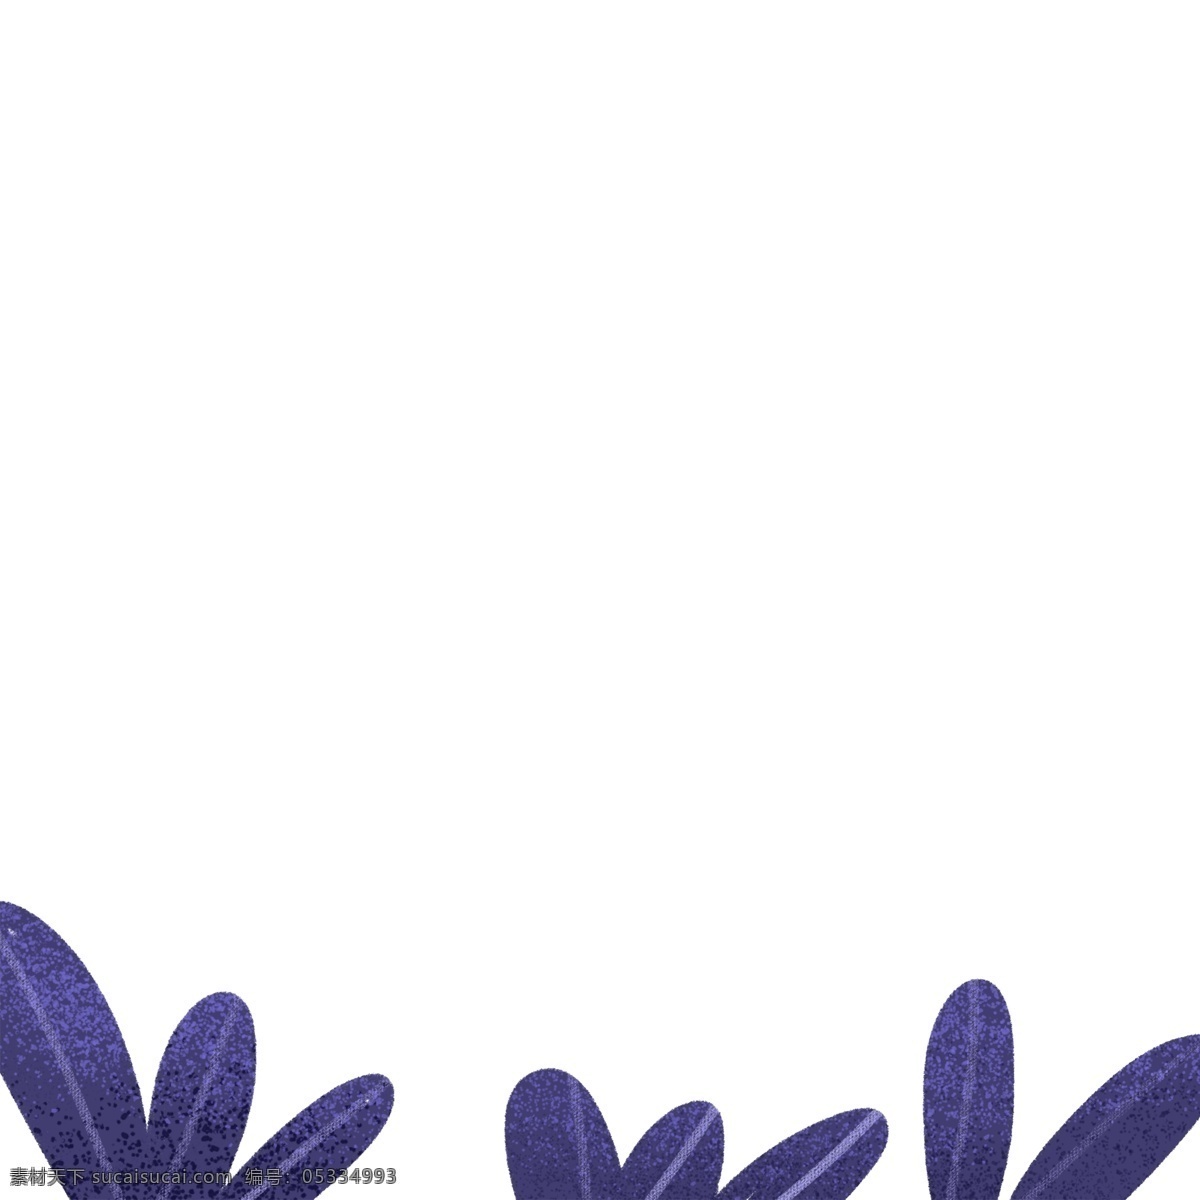 植物 叶子 卡通 植物叶子 紫色叶子 手绘植物叶子 卡通植物叶子 文艺 清新 唯美 梦幻